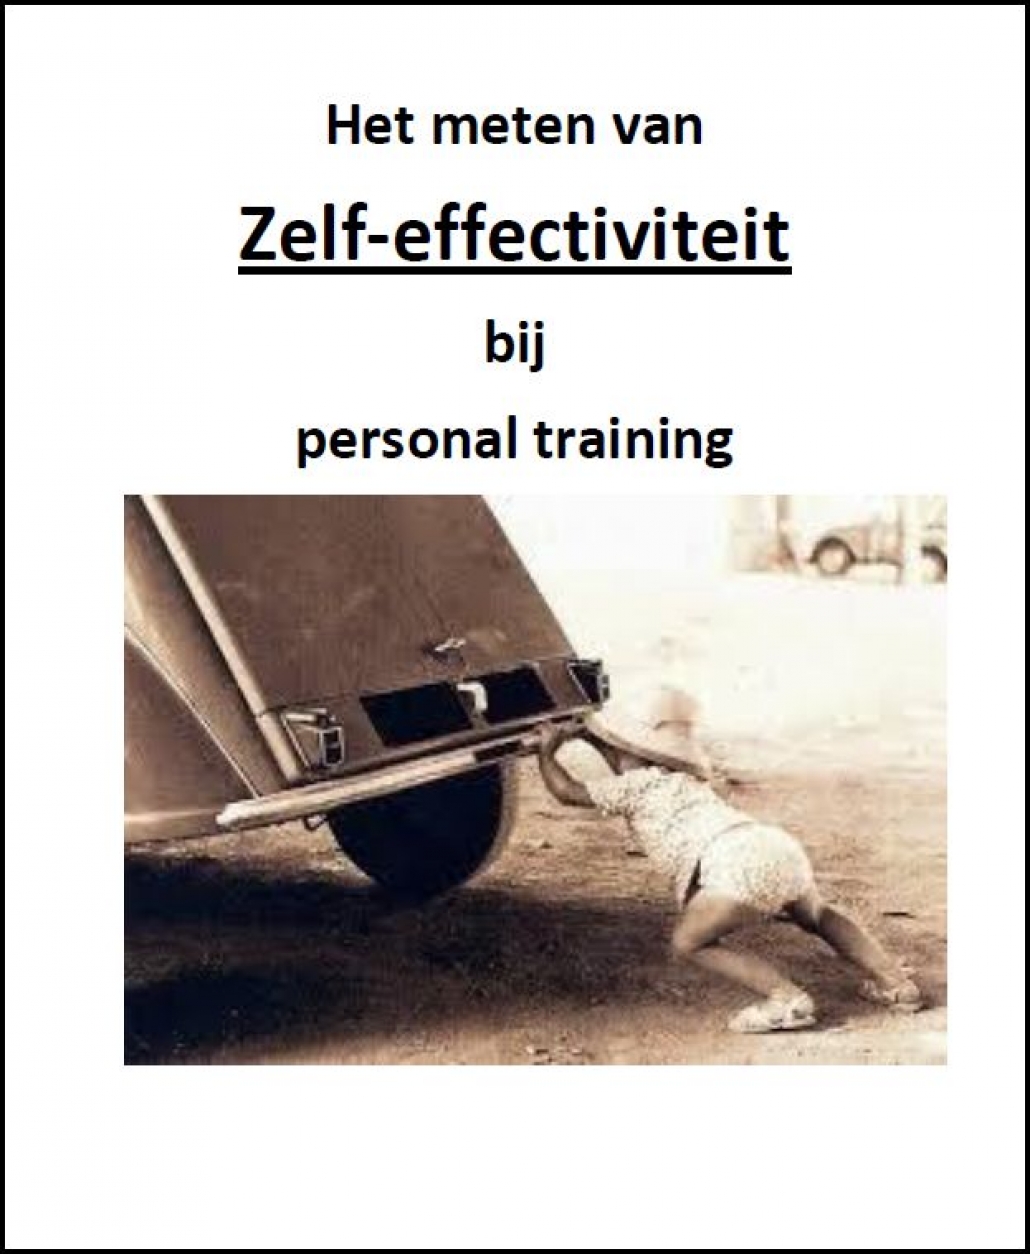 Stellingenlijst om zelf-effectiviteit van personal training klanten te meten